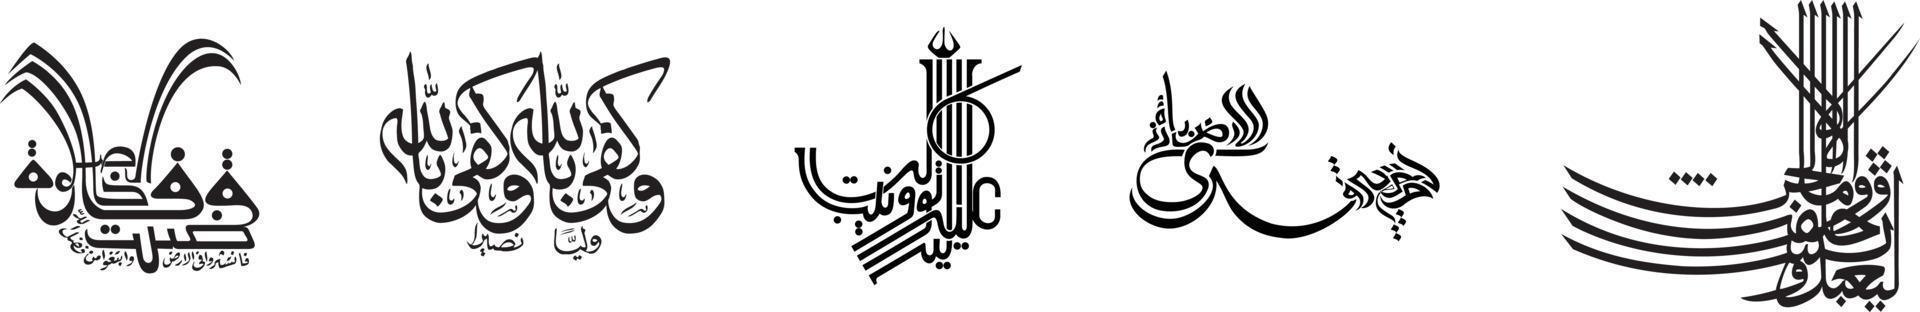 calligraphie arabe créative, illustration vectorielle vecteur